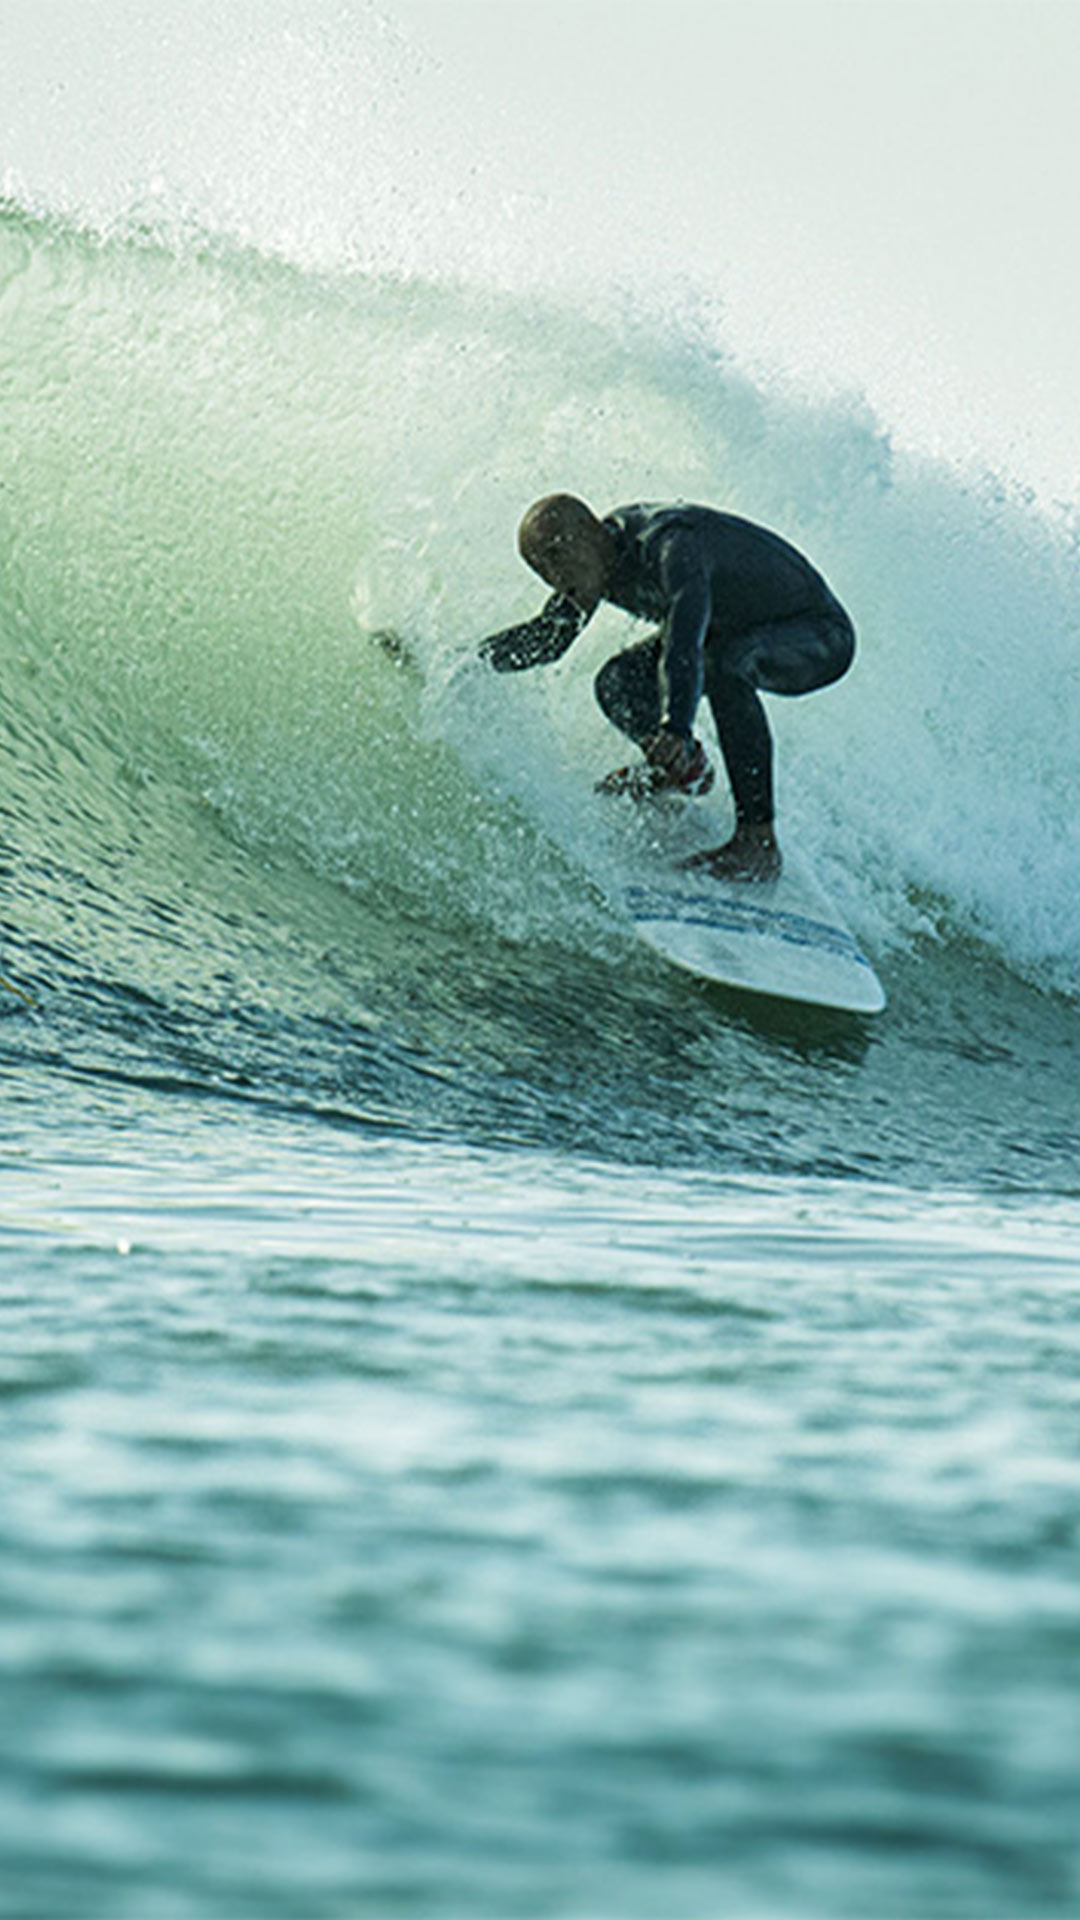 ein Mann mit einem fortgeschritteneren Niveau im Surfen, surft auf einer großen Welle 